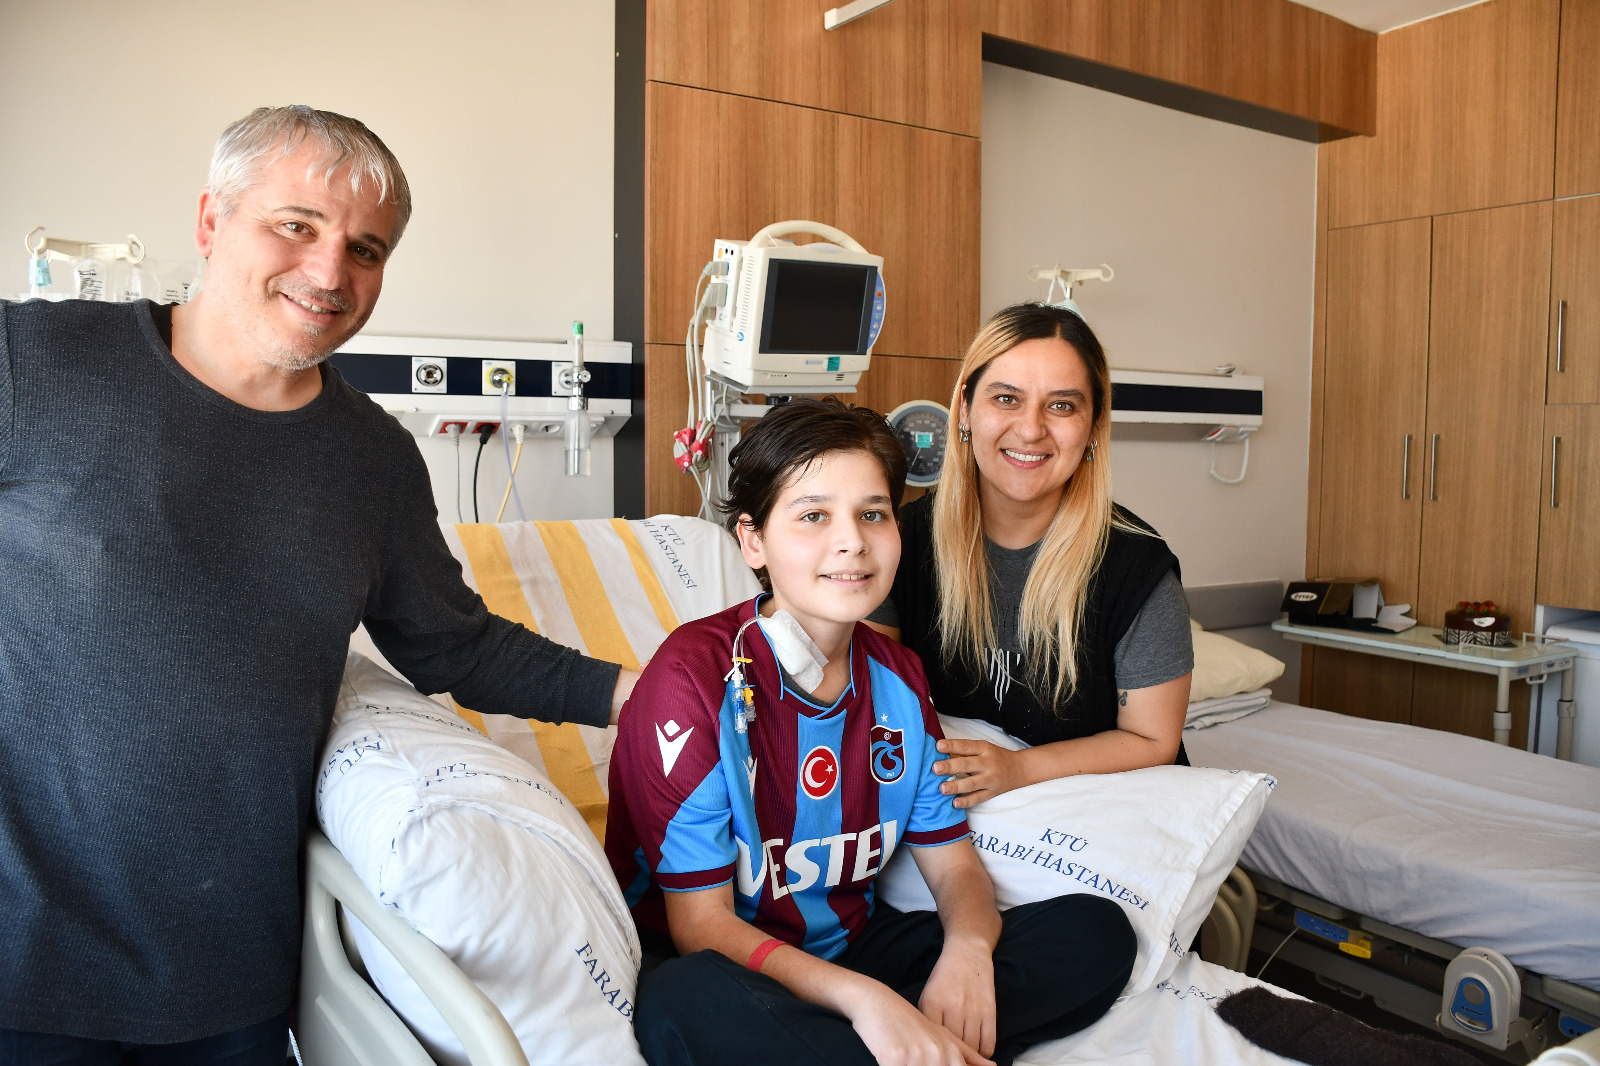 U14 Milli Futbol Takımı seçmeleri hazırlıklarında rahatsızlanan çocuk, KTÜ’de sağlığına kavuştu